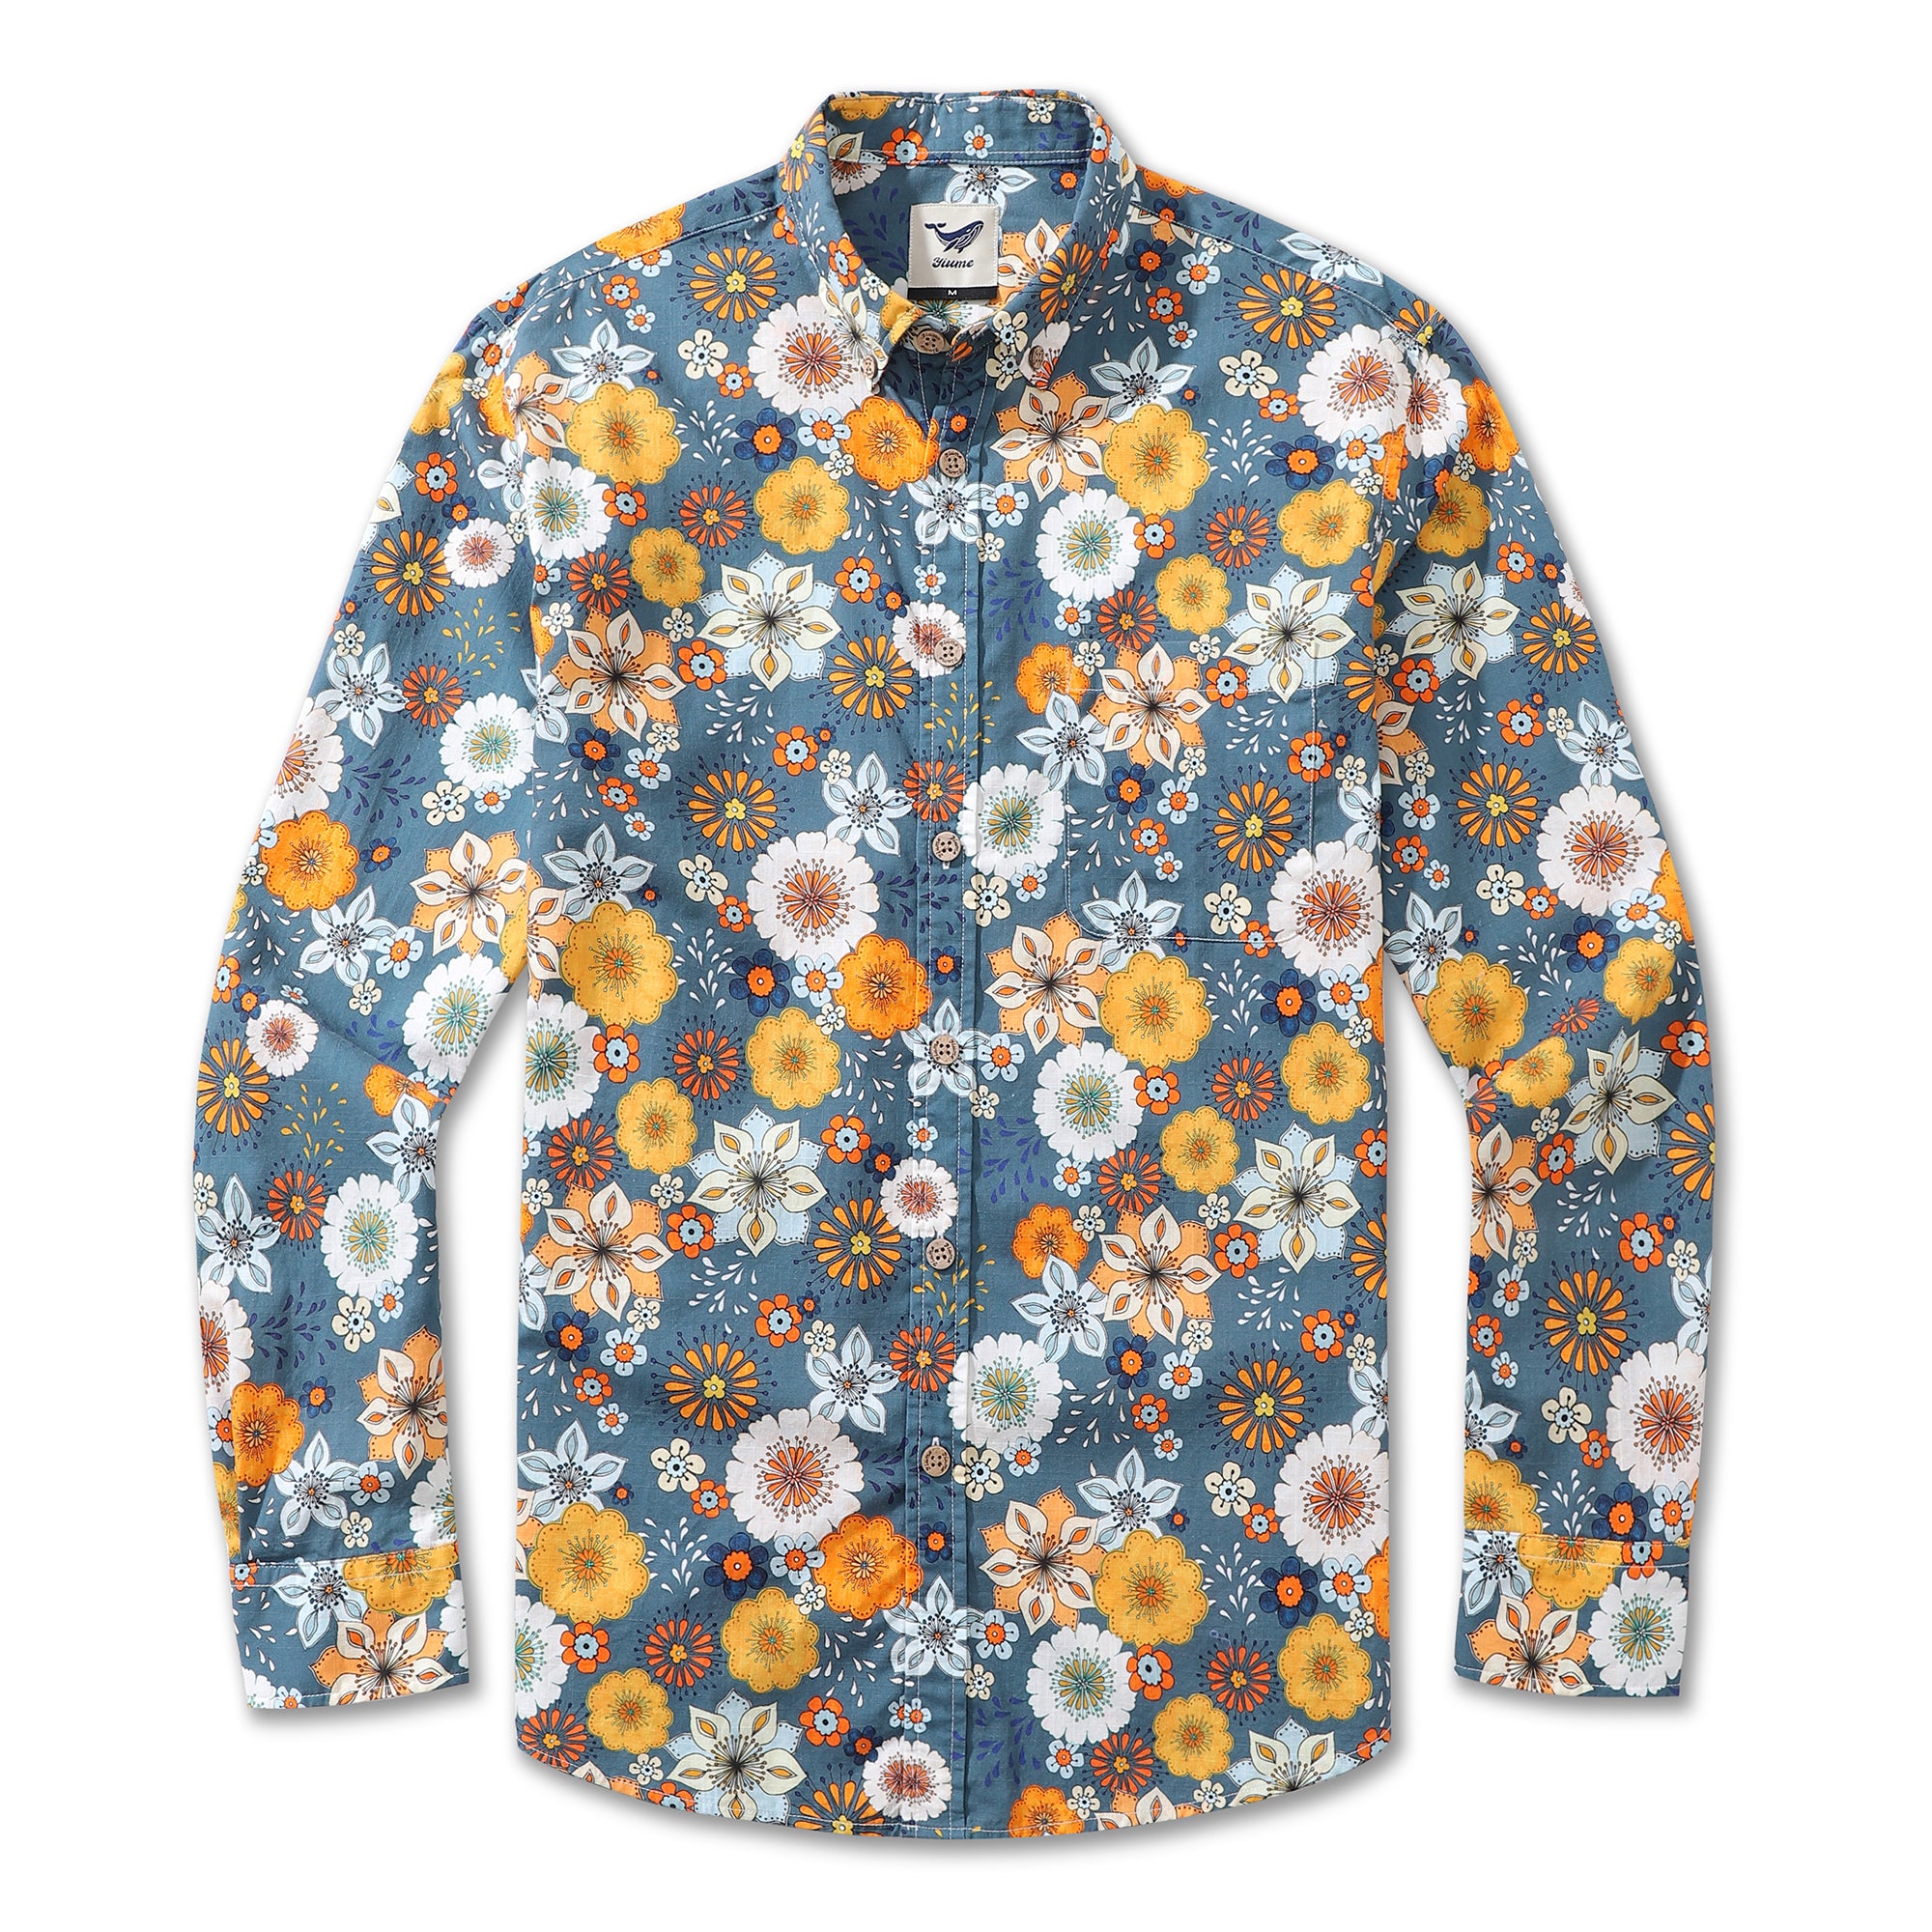 Camisa hawaiana para hombre con estampado floral de los años 60 de Samantha O' Malley Camisa Aloha de manga larga con botones de algodón